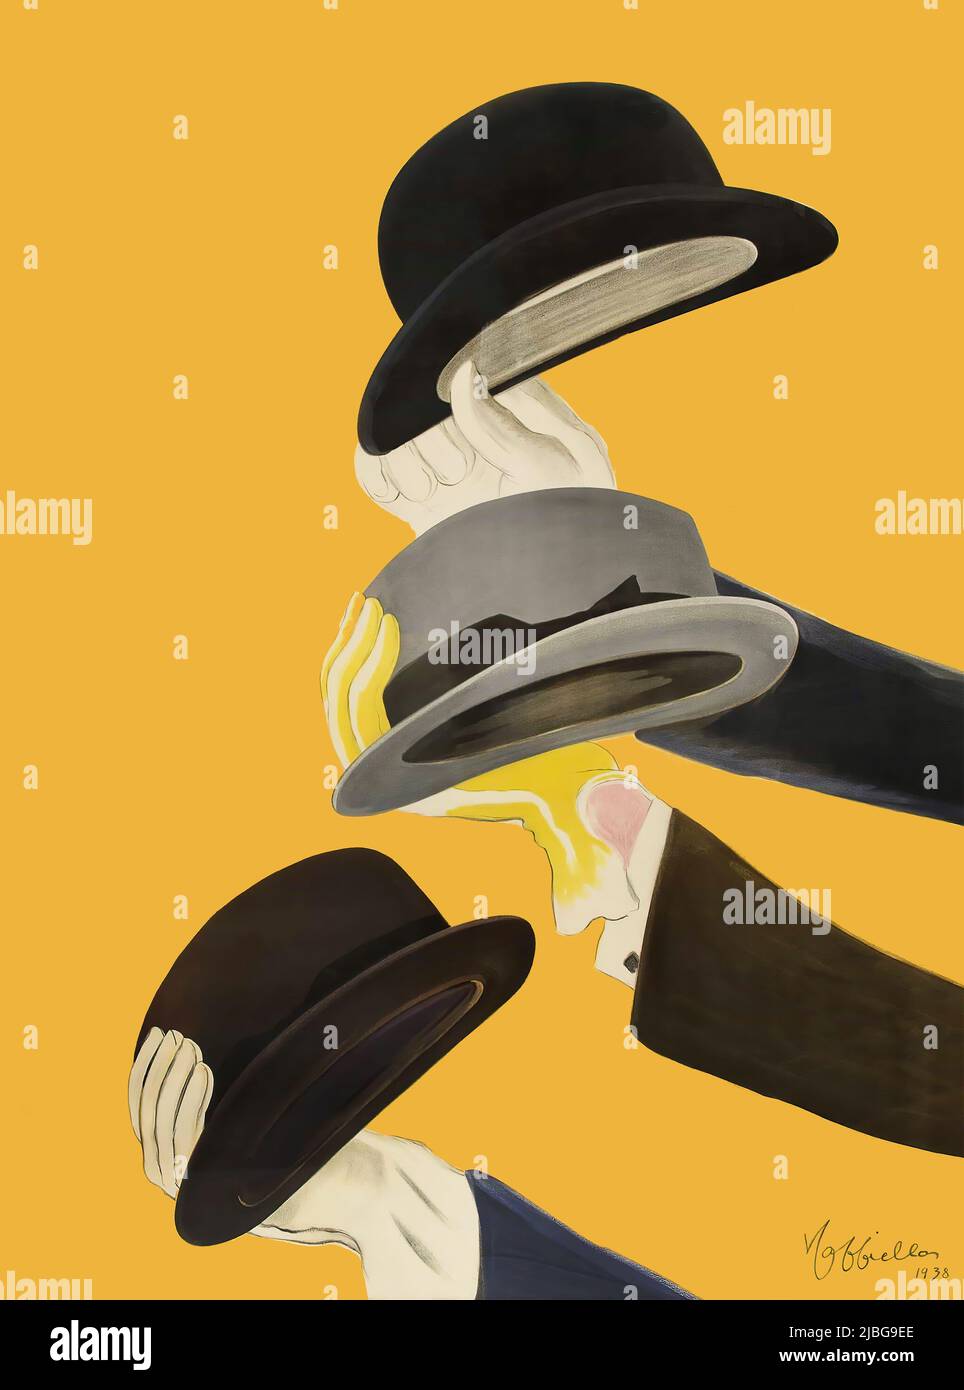 Ein Detail aus der Jahrhundertwende des 20.. Jahrhunderts, französisches Werbeplakat von Leonetto Cappiello (1875-1942), mit den gewellten Hüten (Guten Morgen) von drei Herren. Ursprünglich für Mossant, eine berühmte Hutmarke, die in Frankreich hergestellt wurde, entworfen, wurden die Textdetails entfernt. Das ursprüngliche Poster mit Text ist zu sehen bei Alamy Bildnummer 2JBG9CE Stockfoto